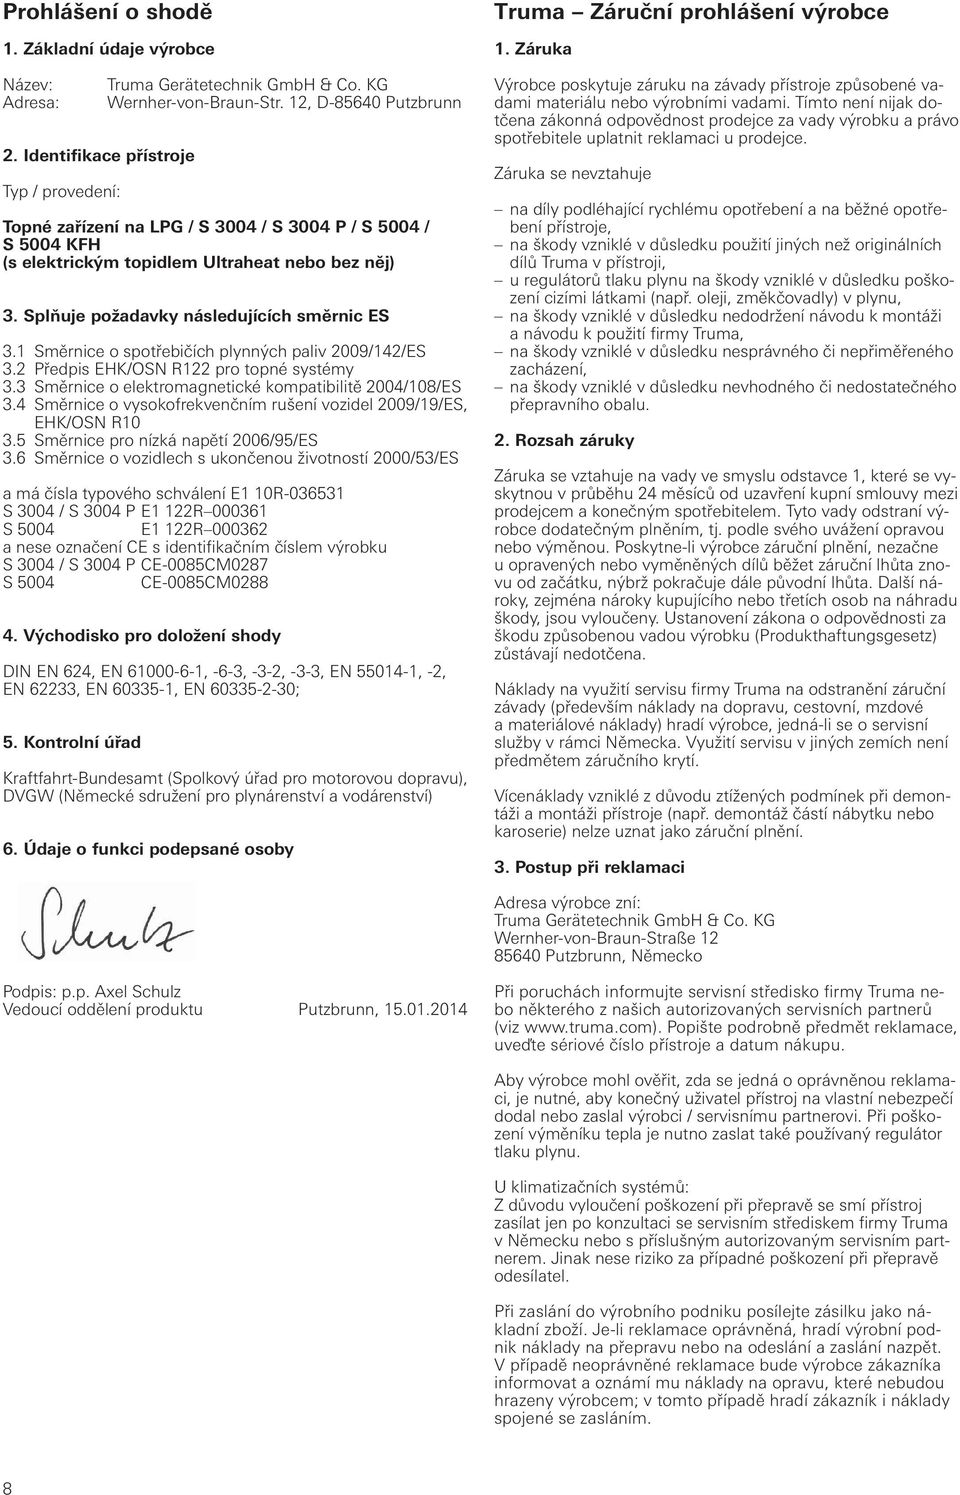 Směrnice o spotřebičích plynných paliv 009/4/ES 3. Předpis EHK/OSN R pro topné systémy 3.3 Směrnice o elektromagnetické kompatibilitě 004/08/ES 3.